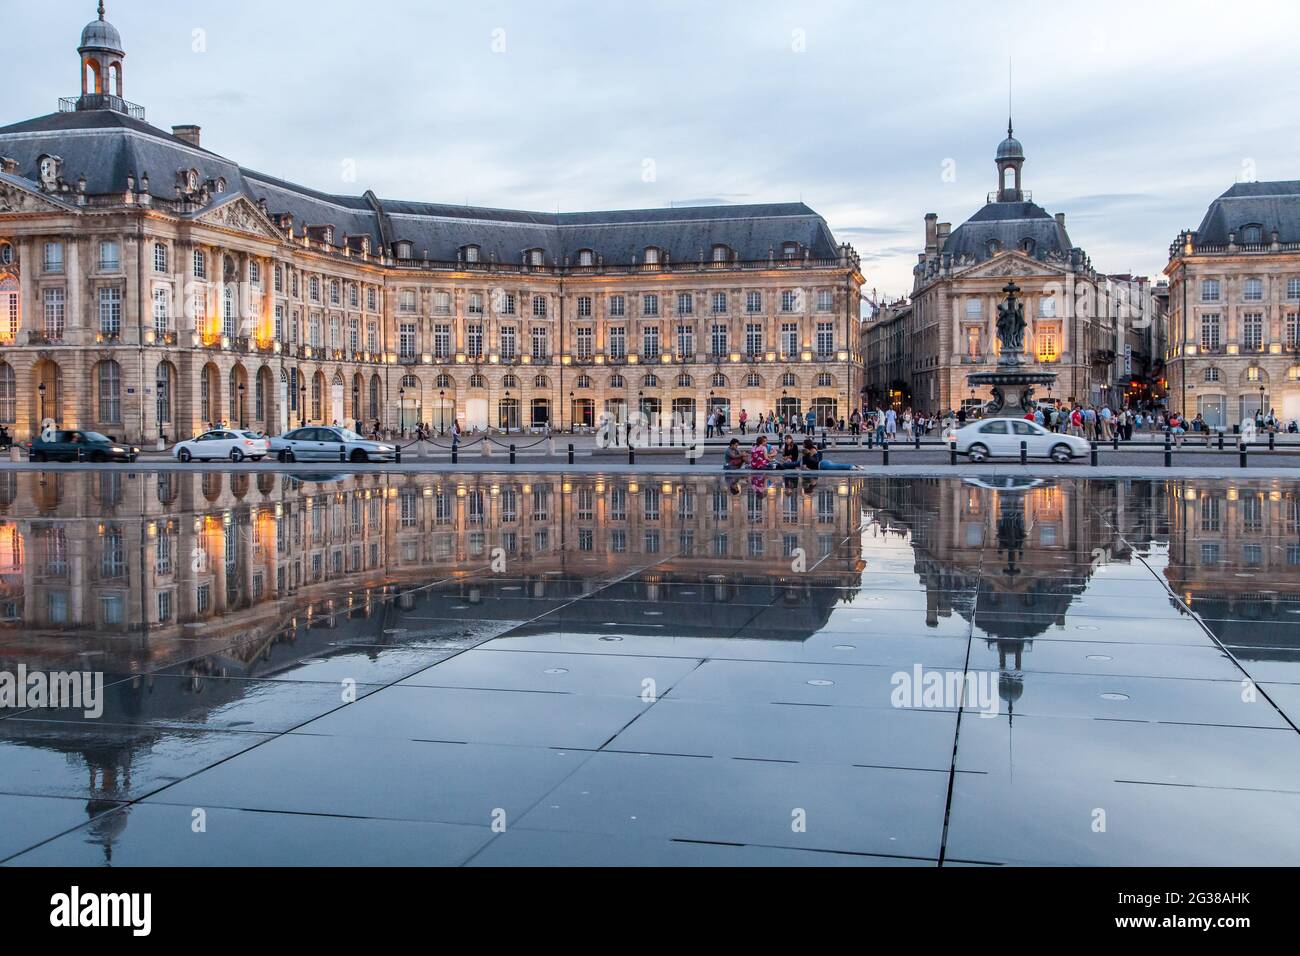 The Miroir d'eau in Bordeaux The Miroir d'eau (Water Mirror) or Miroir des  Quais (Quay Mirror) in Bordeaux is the world's largest[1] reflecting pool  Stock Photo - Alamy